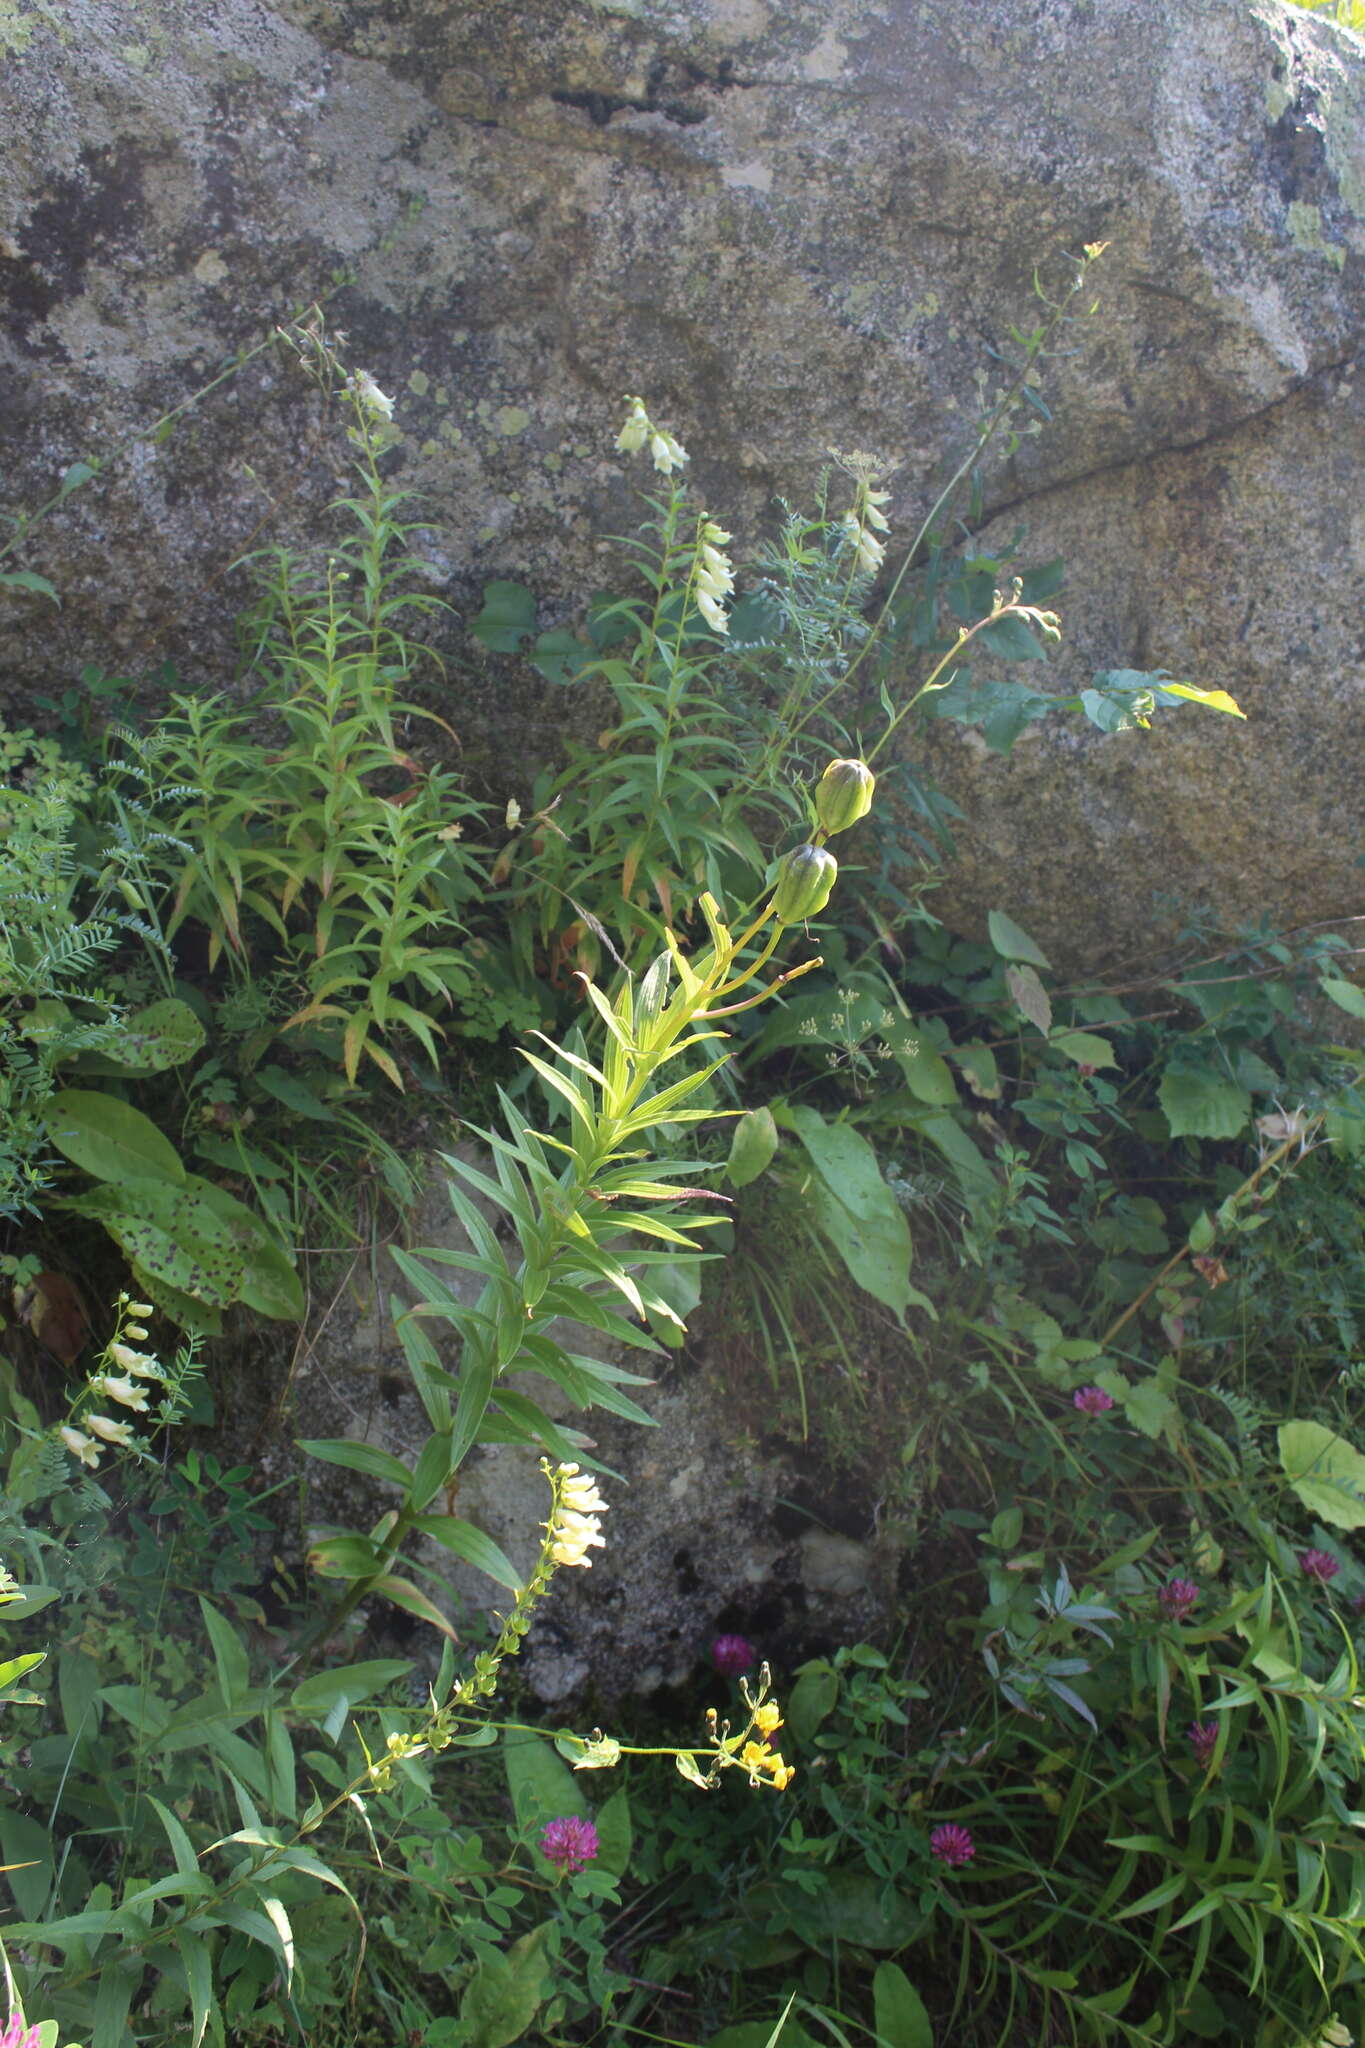 Image of Lilium monadelphum M. Bieb.